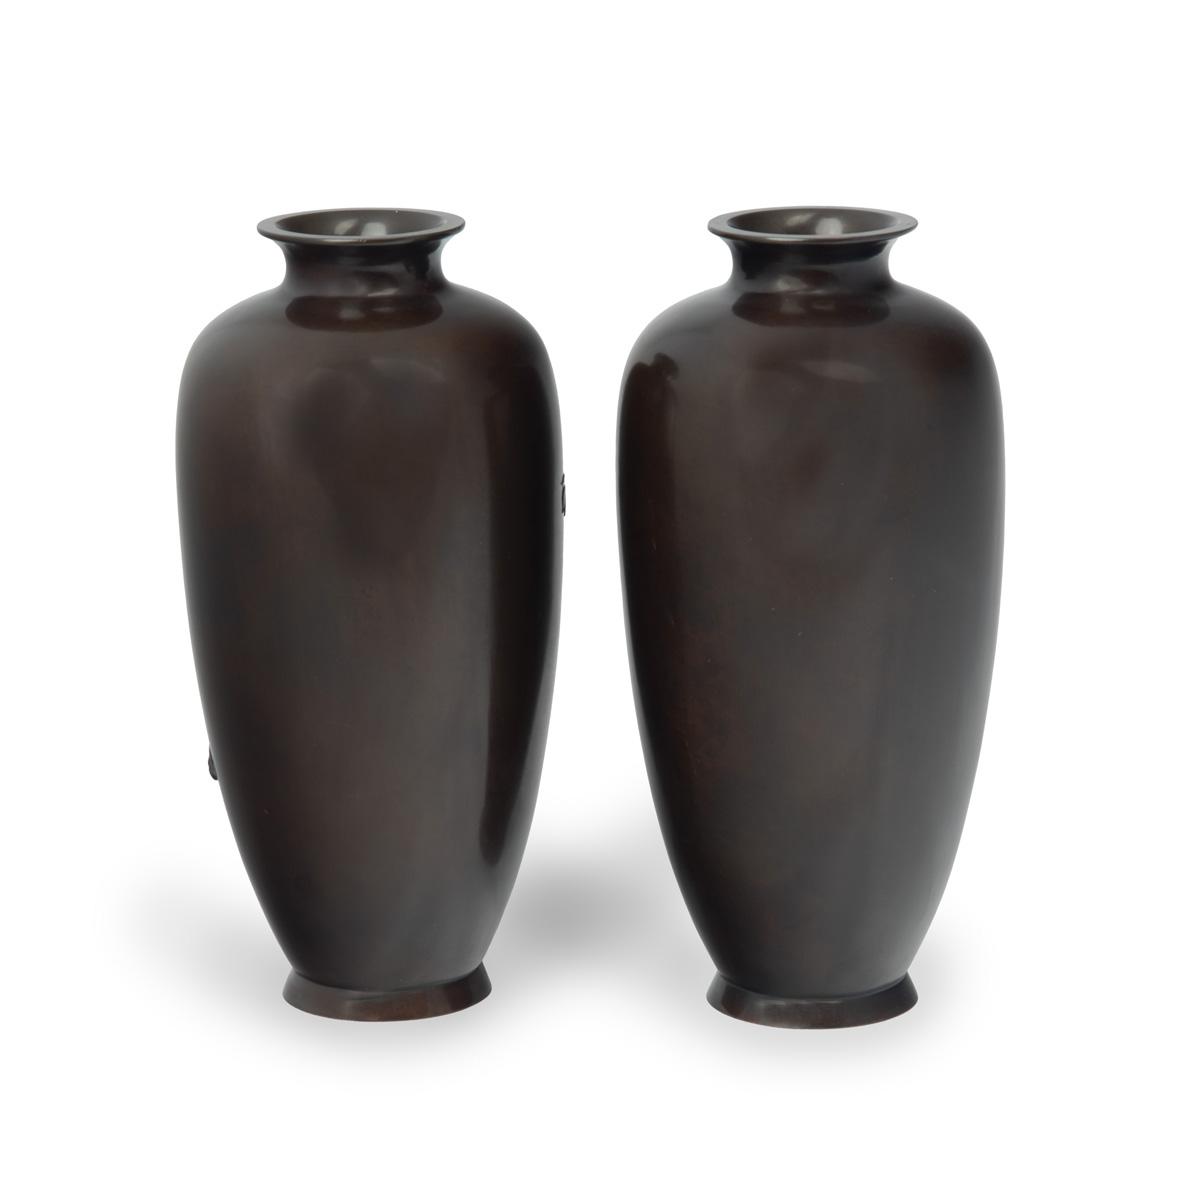 Meiji period bronze vases